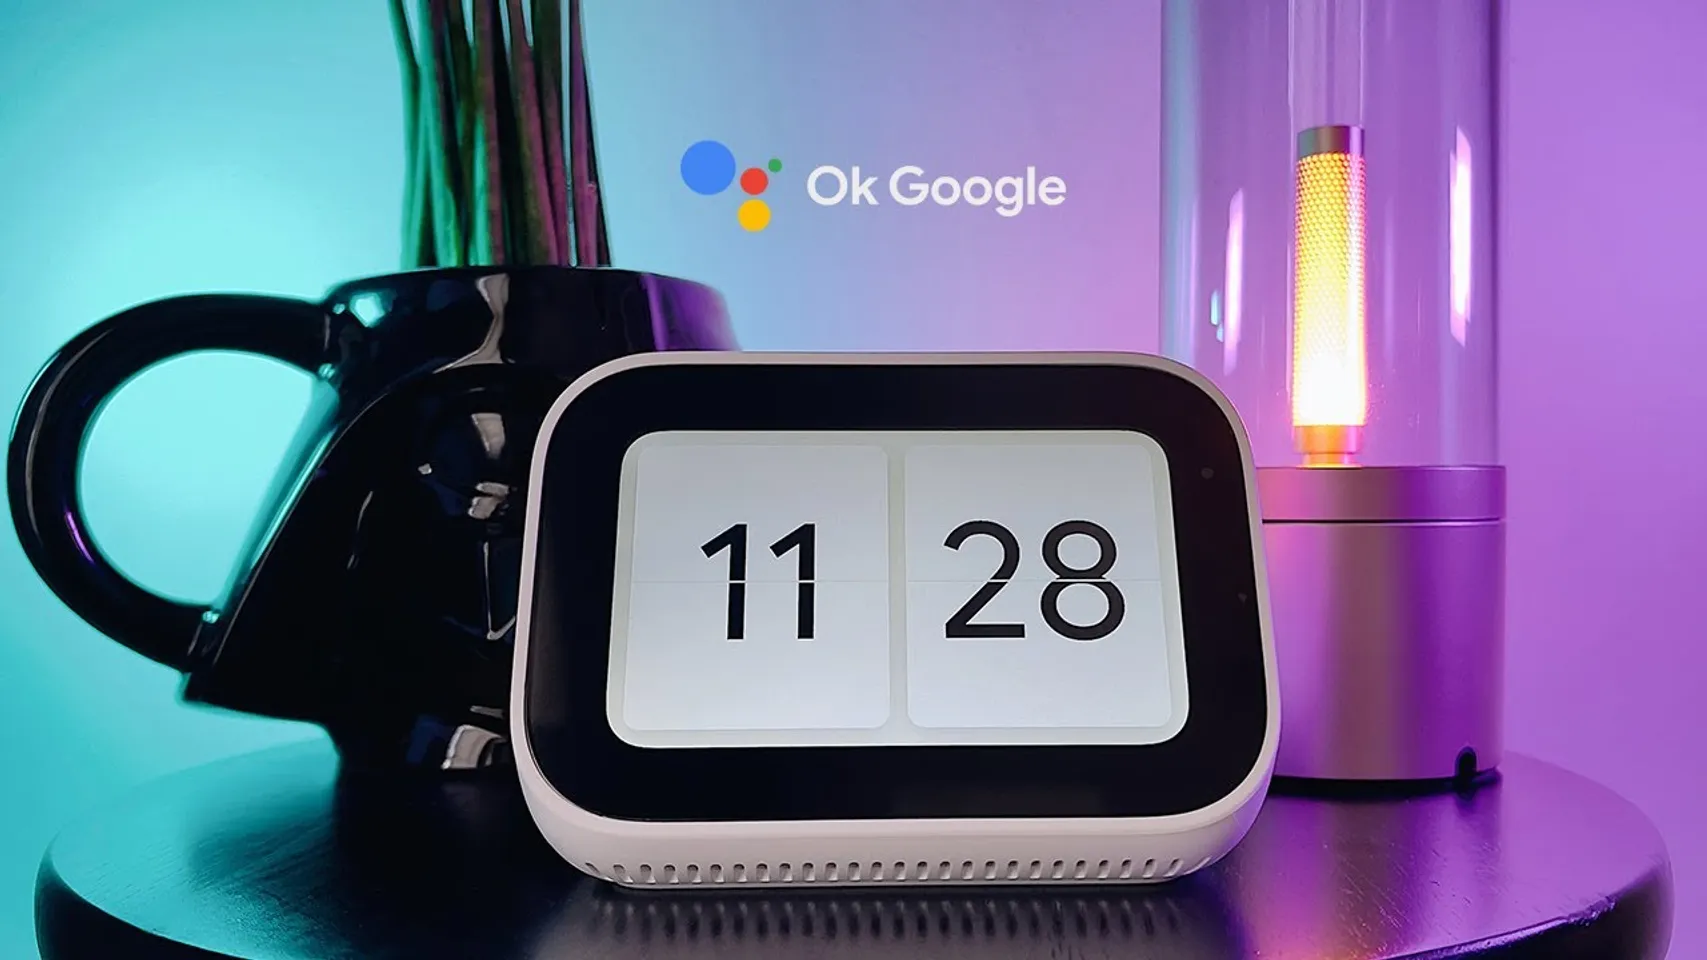 Loa đồng hồ thông minh google Mi Smart Clock hỗ trợ chức năng trợ lý ảo thông minmh